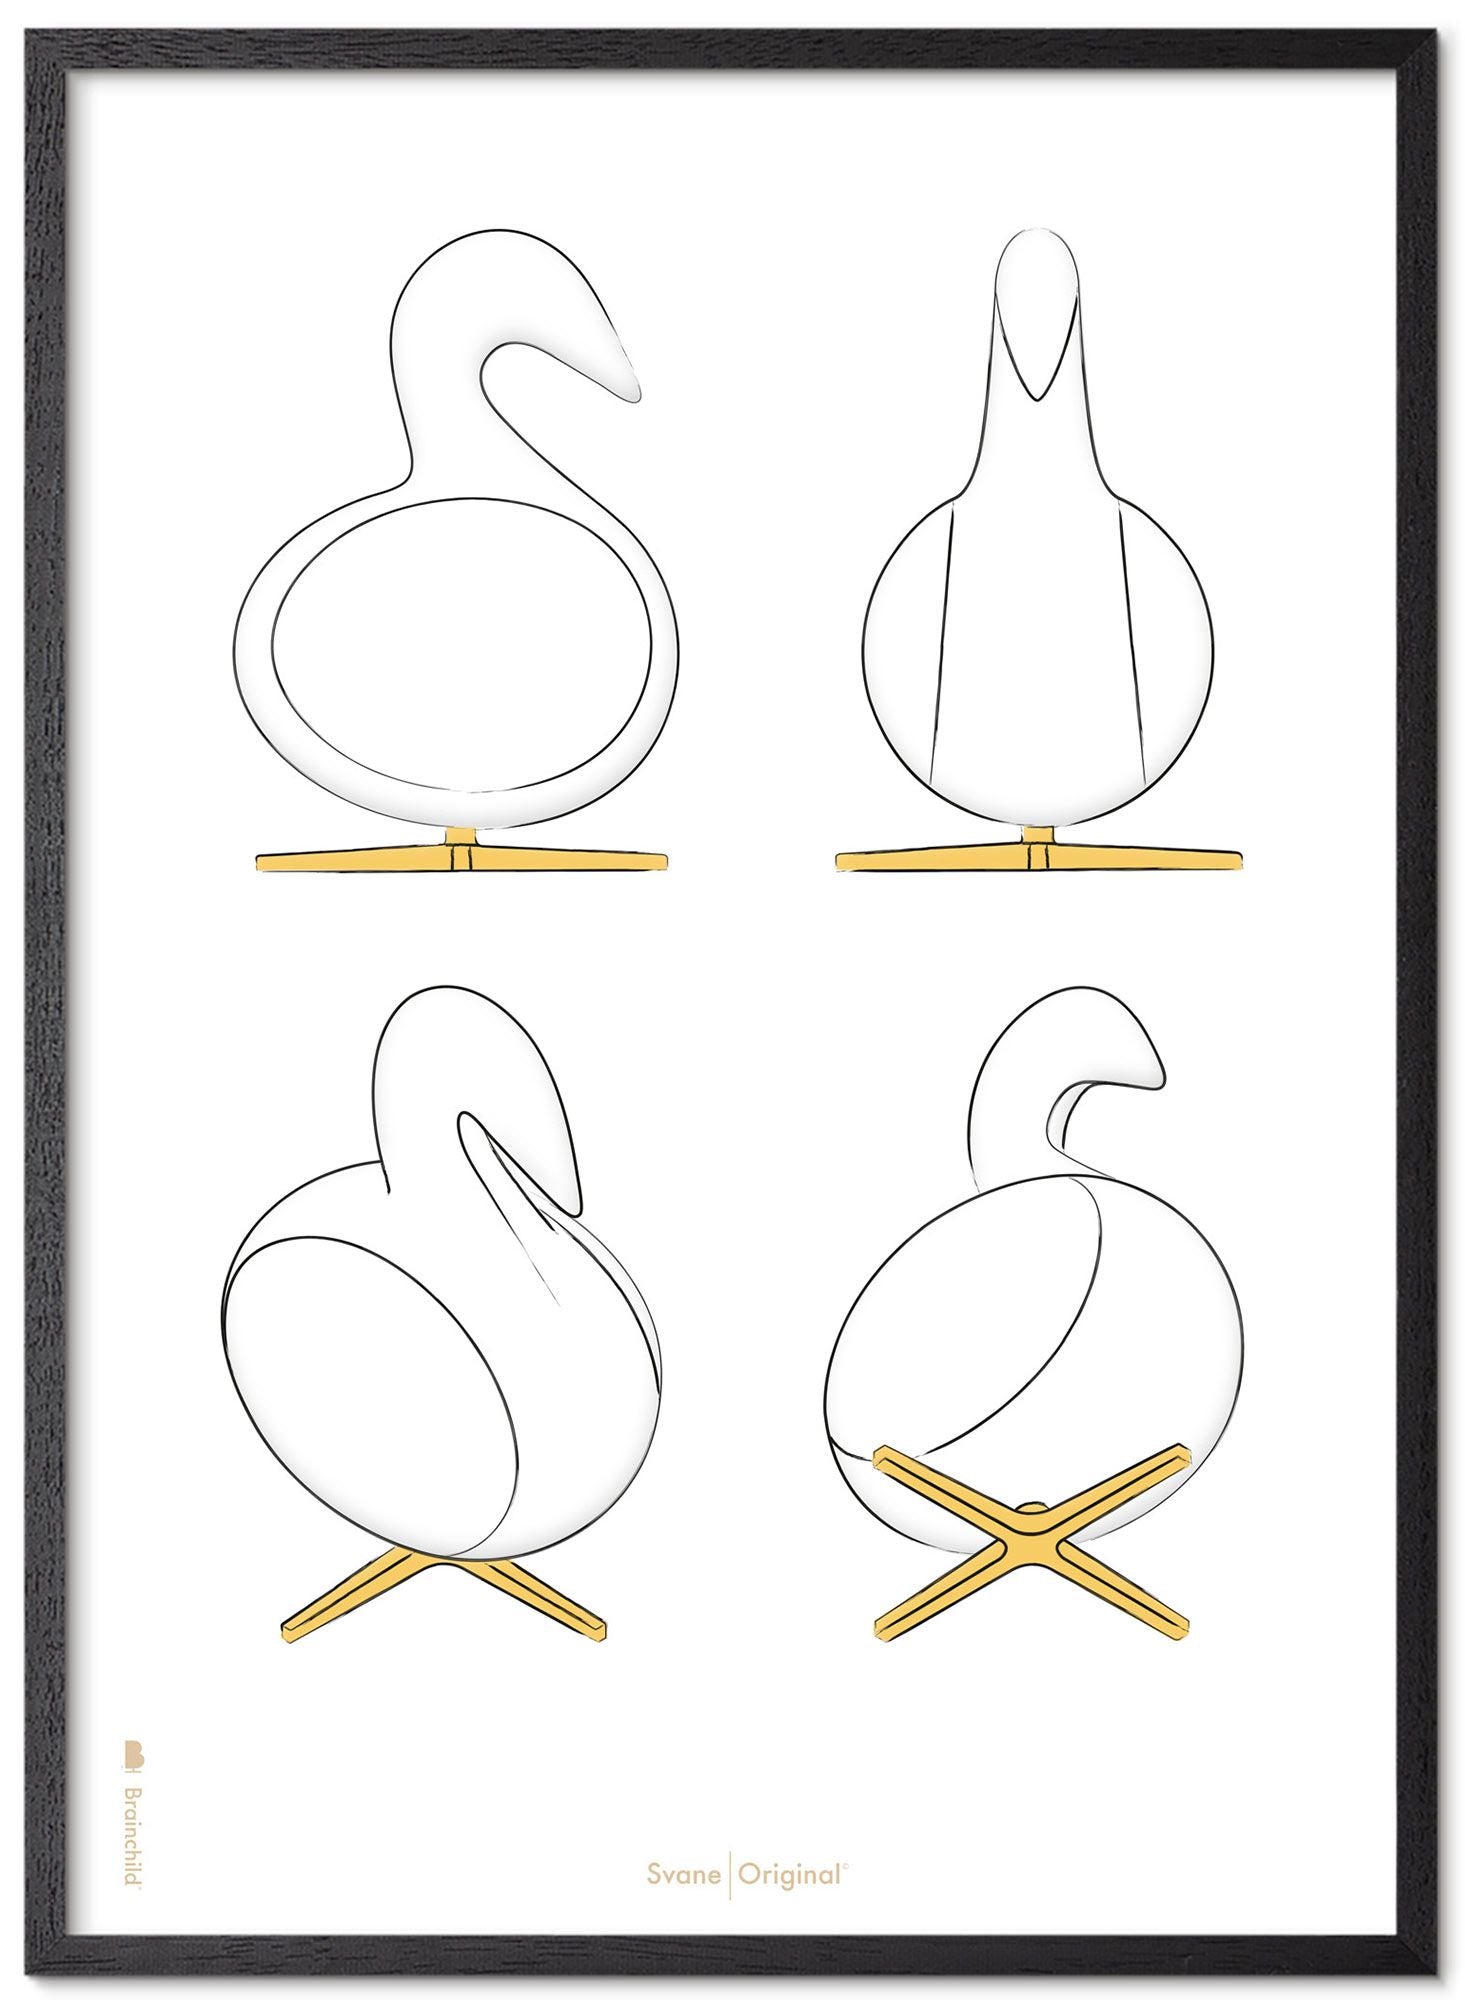 Schema poster di disegno di disegno cigno da gioco in legno laccato nero a5, sfondo bianco